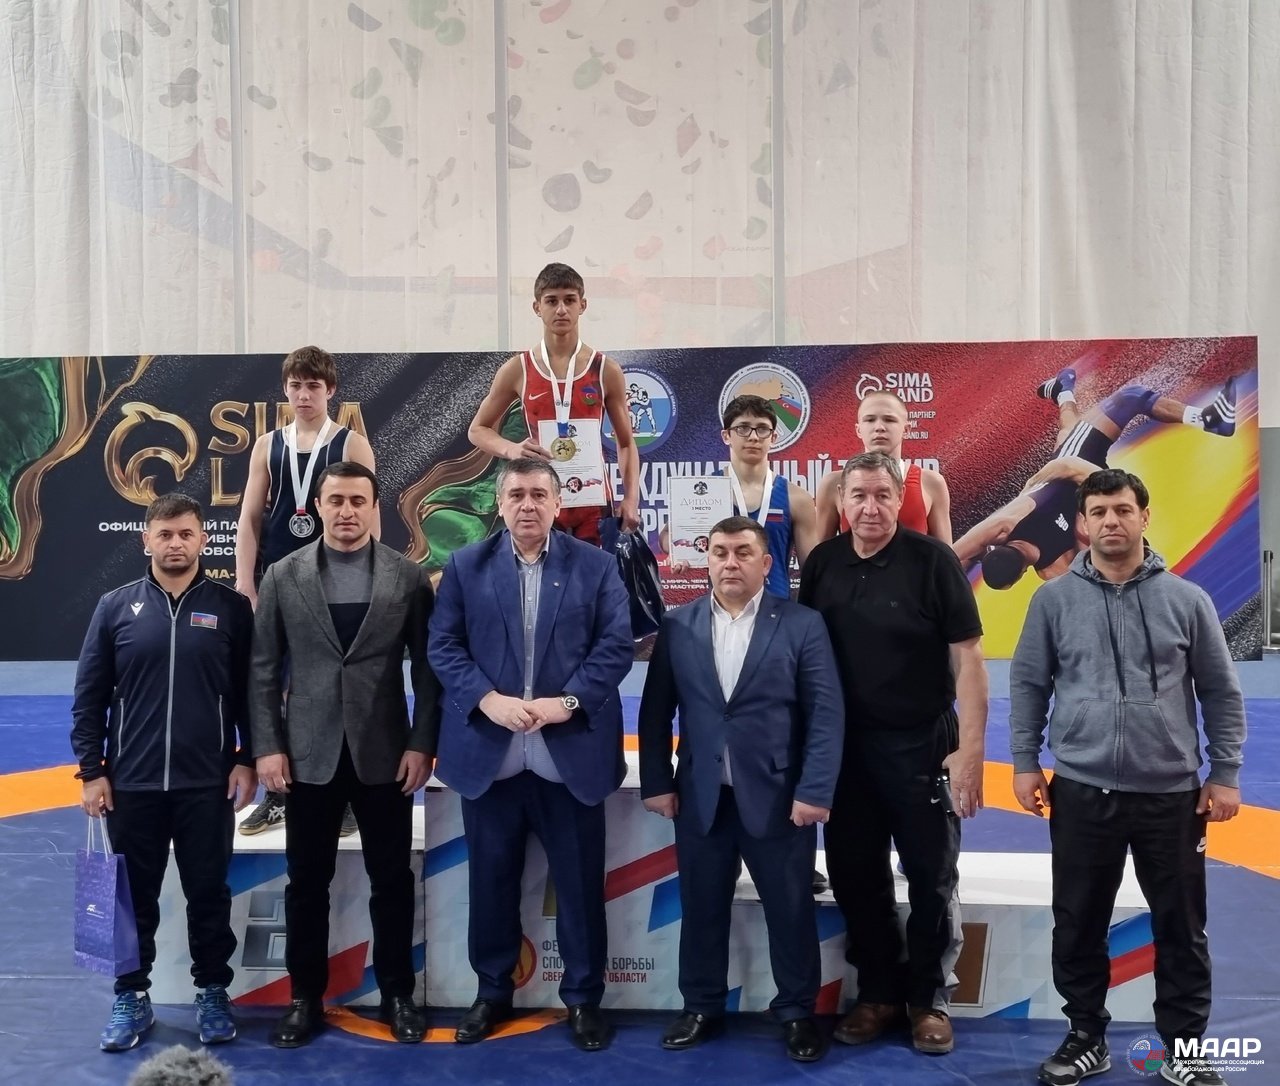 В Екатеринбурге состоялся юбилейный XV-й международный турнир по греко-римской борьбе на призы Г. Н. Мамедалиева